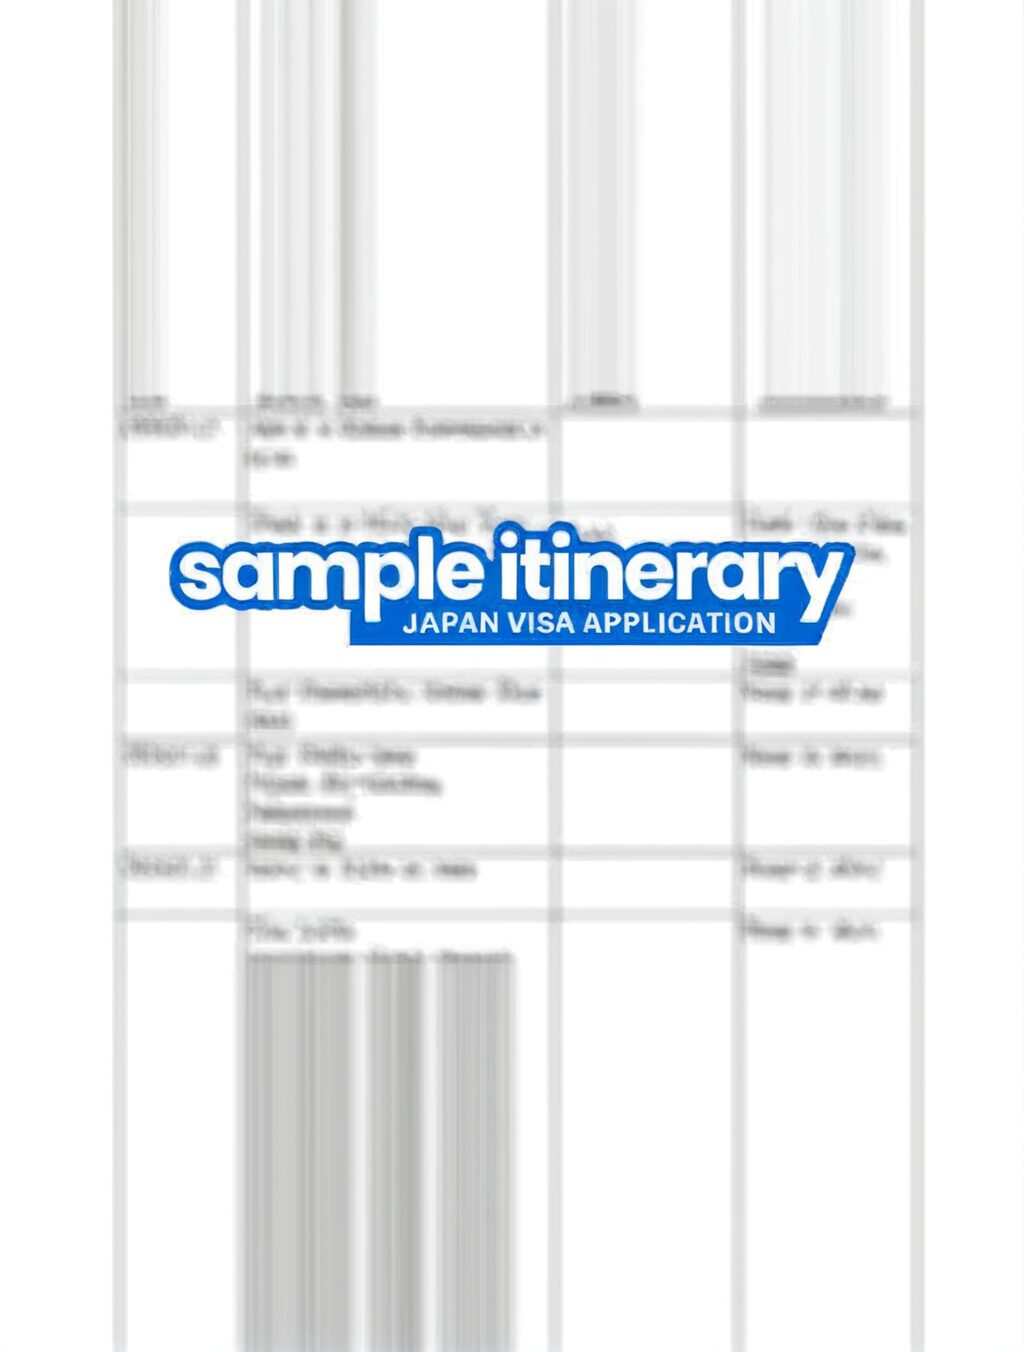 japan itinerary for visa application